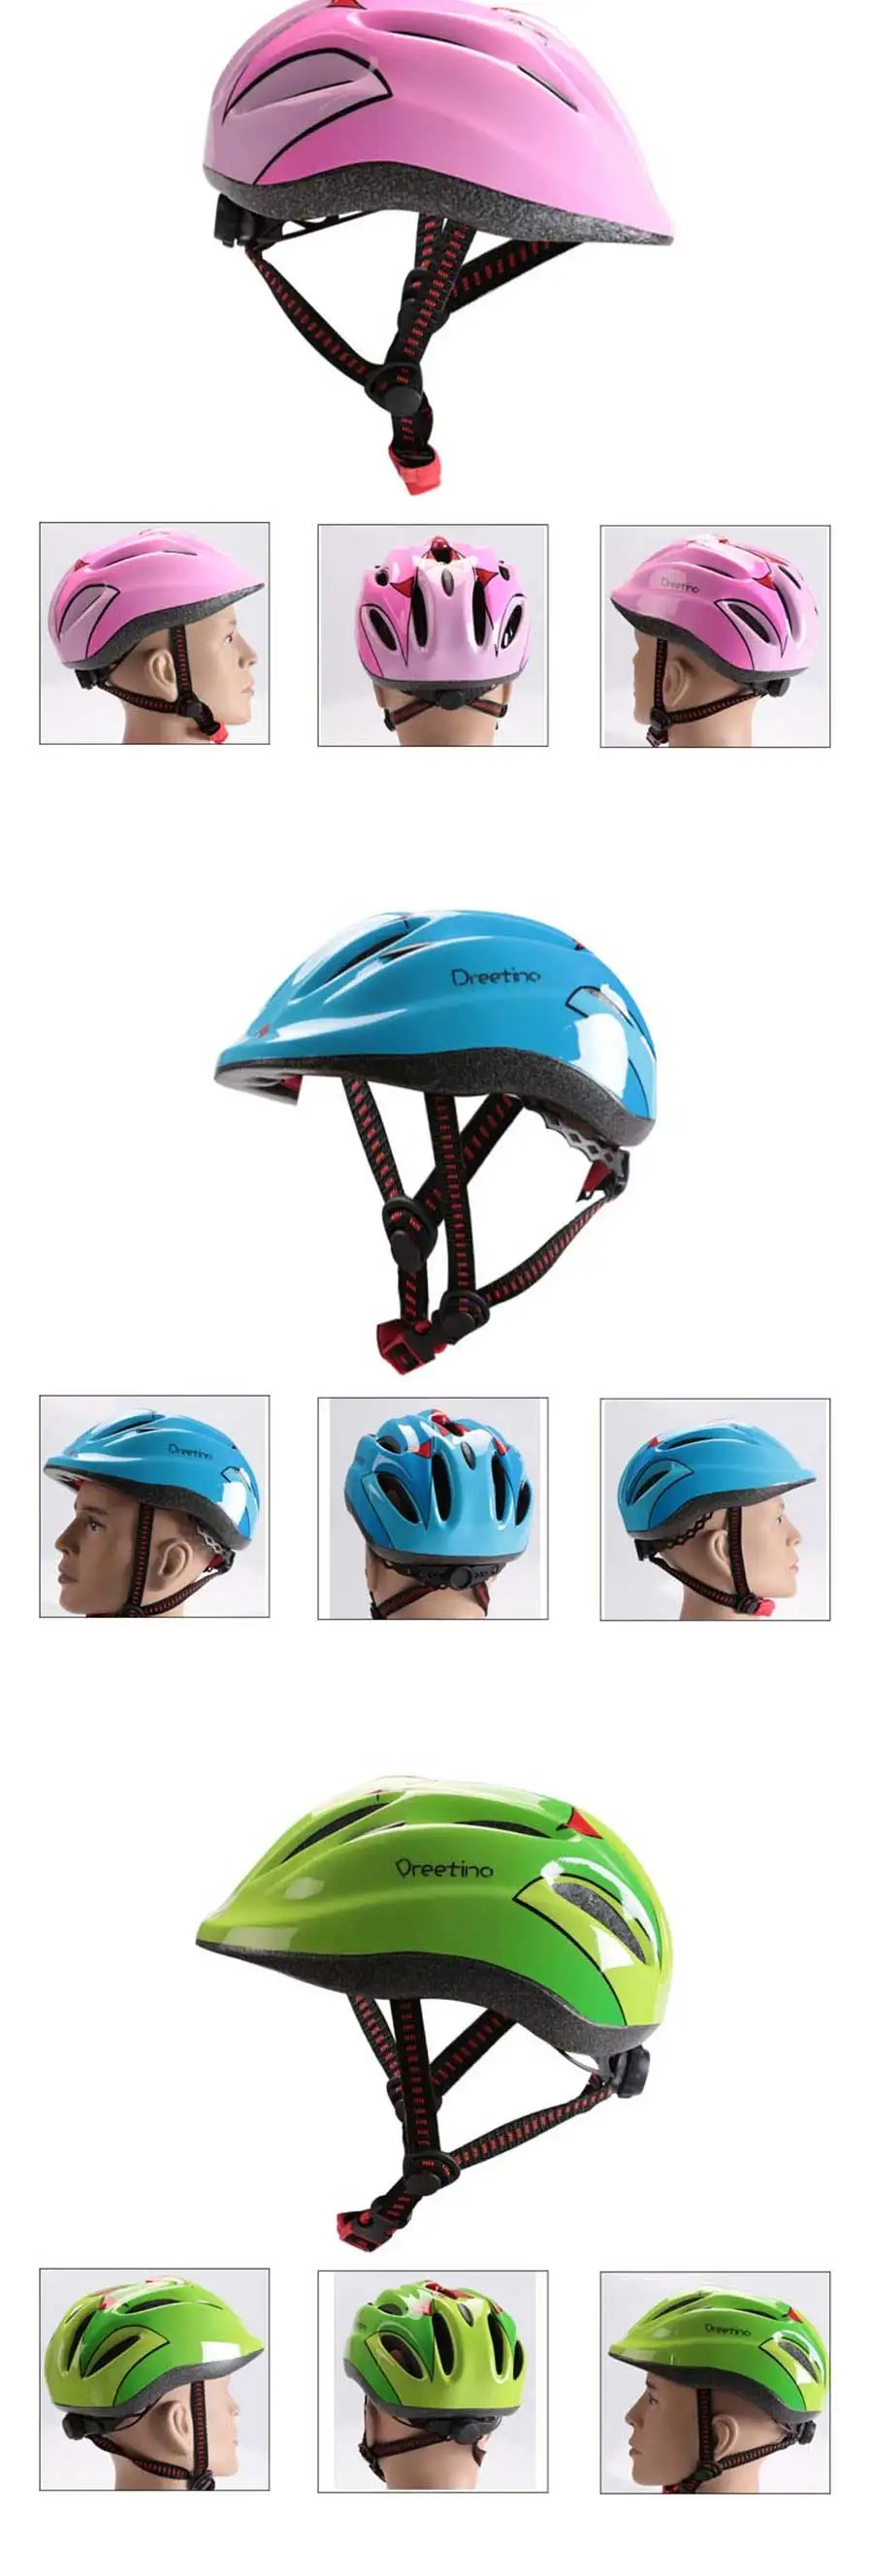 specialized max xxl helmet